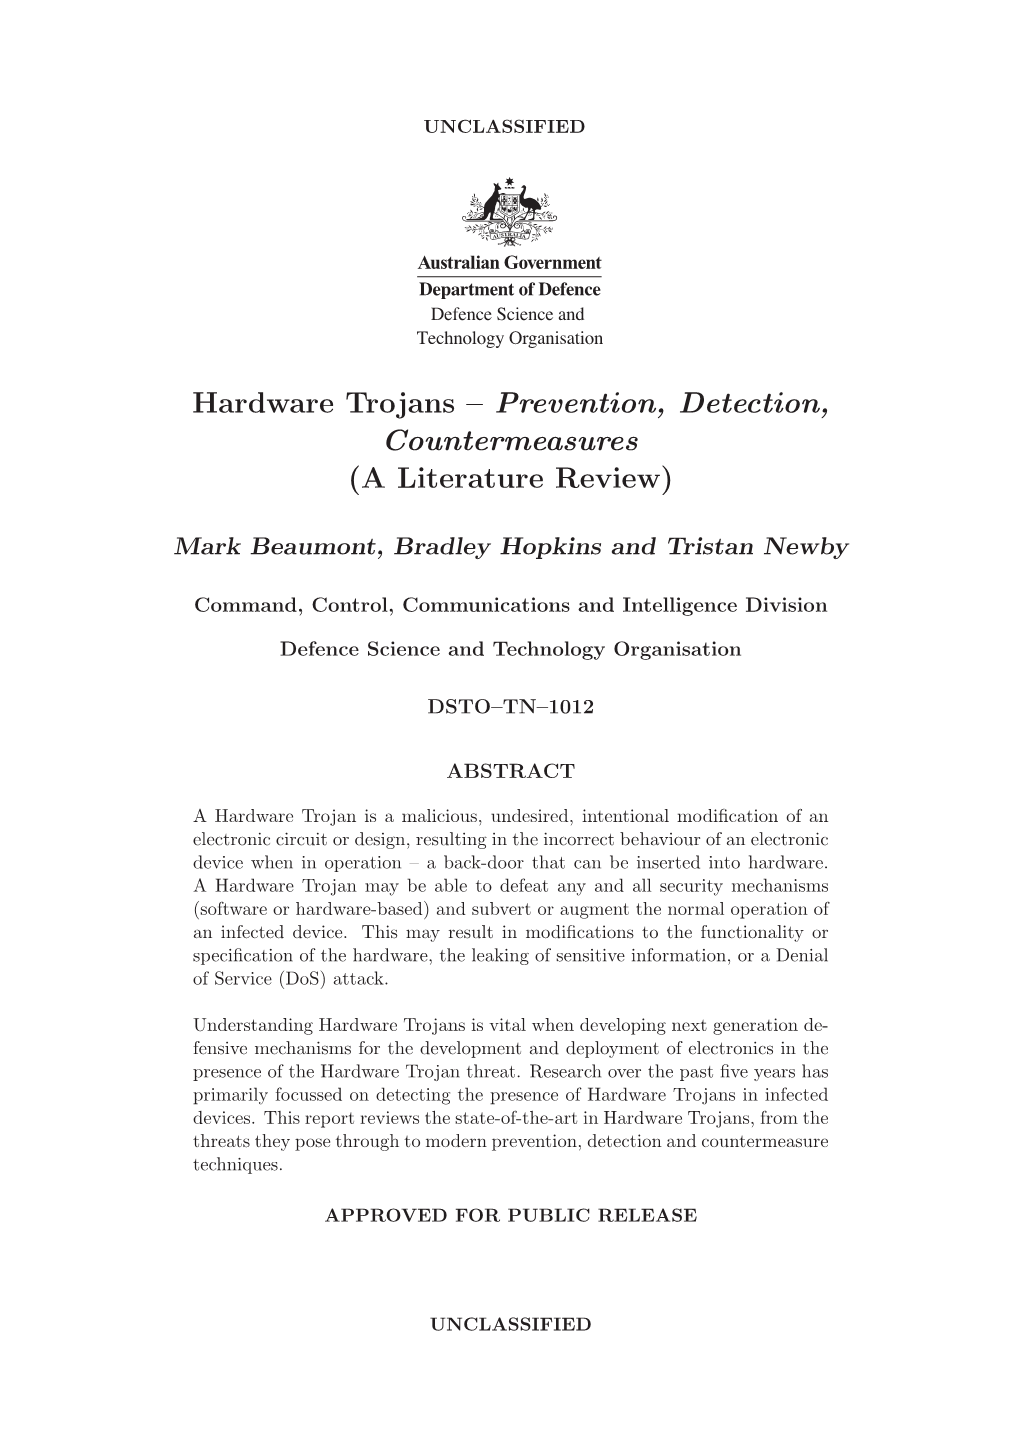 Hardware Trojans – Prevention, Detection, Countermeasures (A Literature Review)